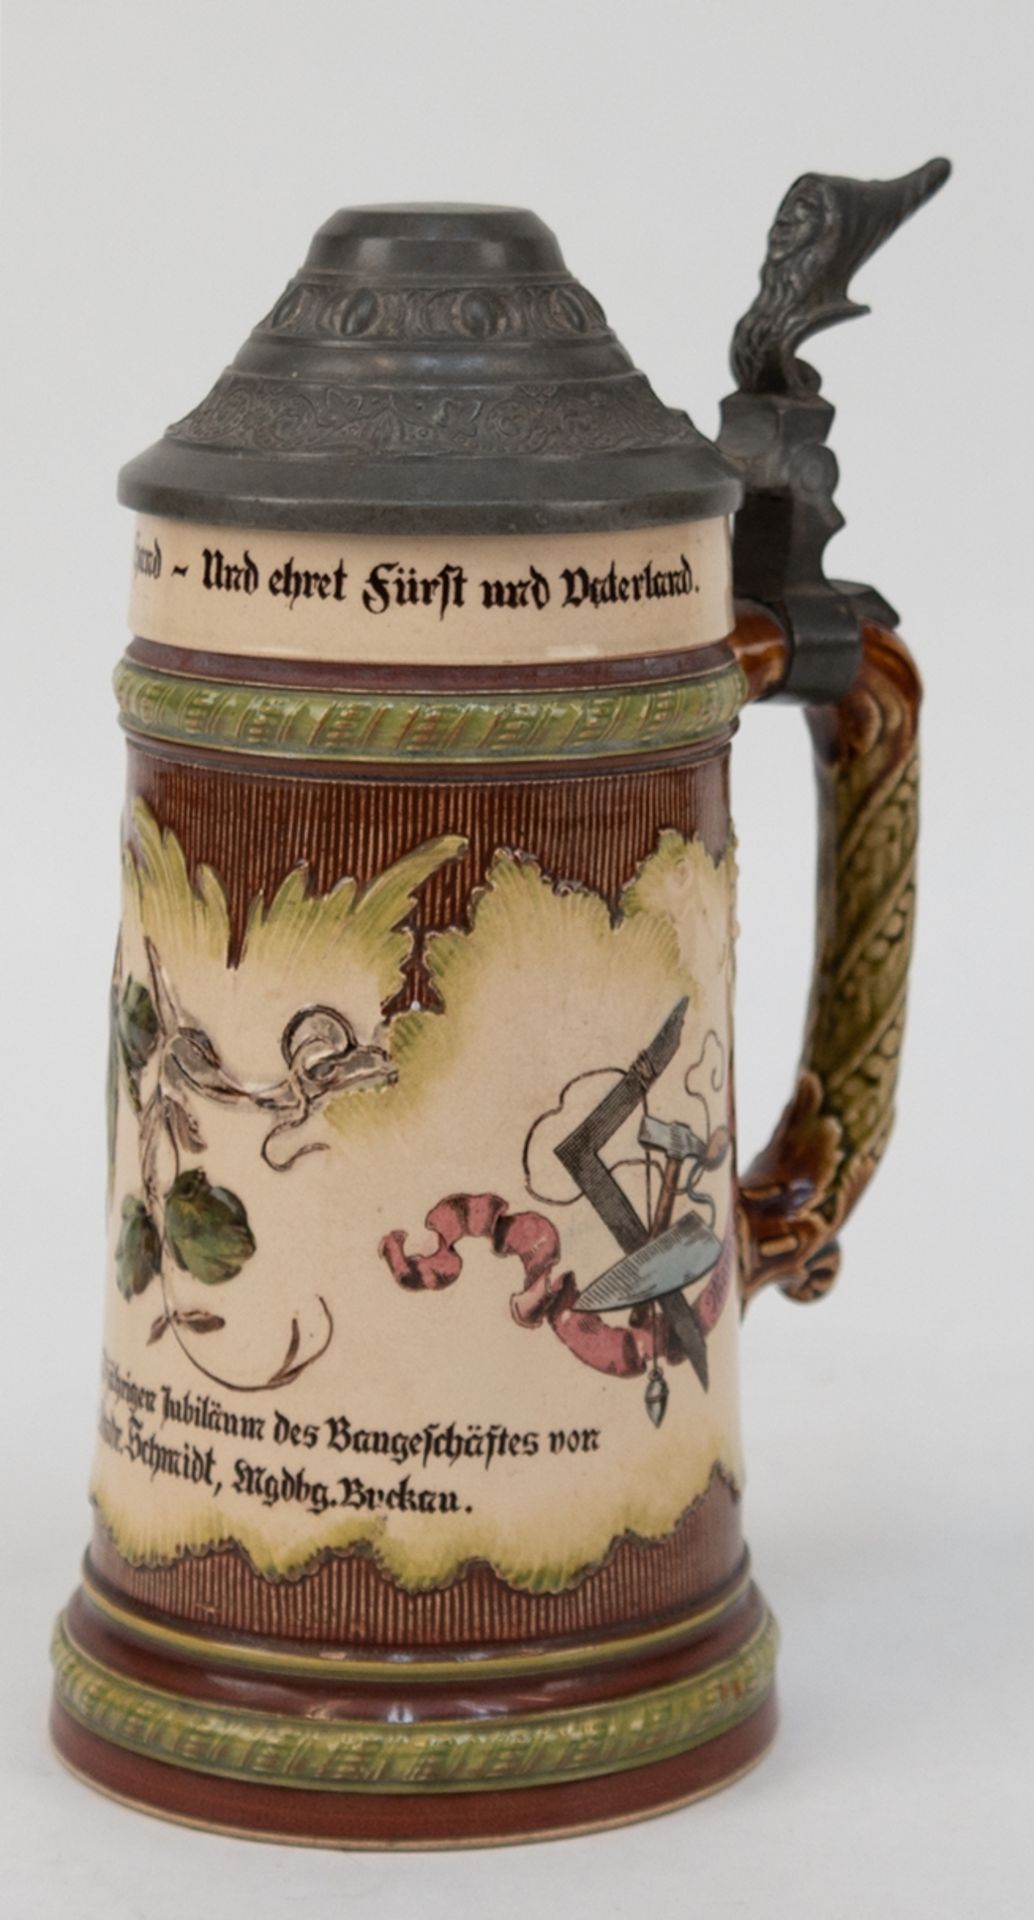 Bierkrug mit Zinndeckel, Mettlach Nr. 4184 mit Schloßmarke, "Andenken zum 50jährigen Jubiläum des B